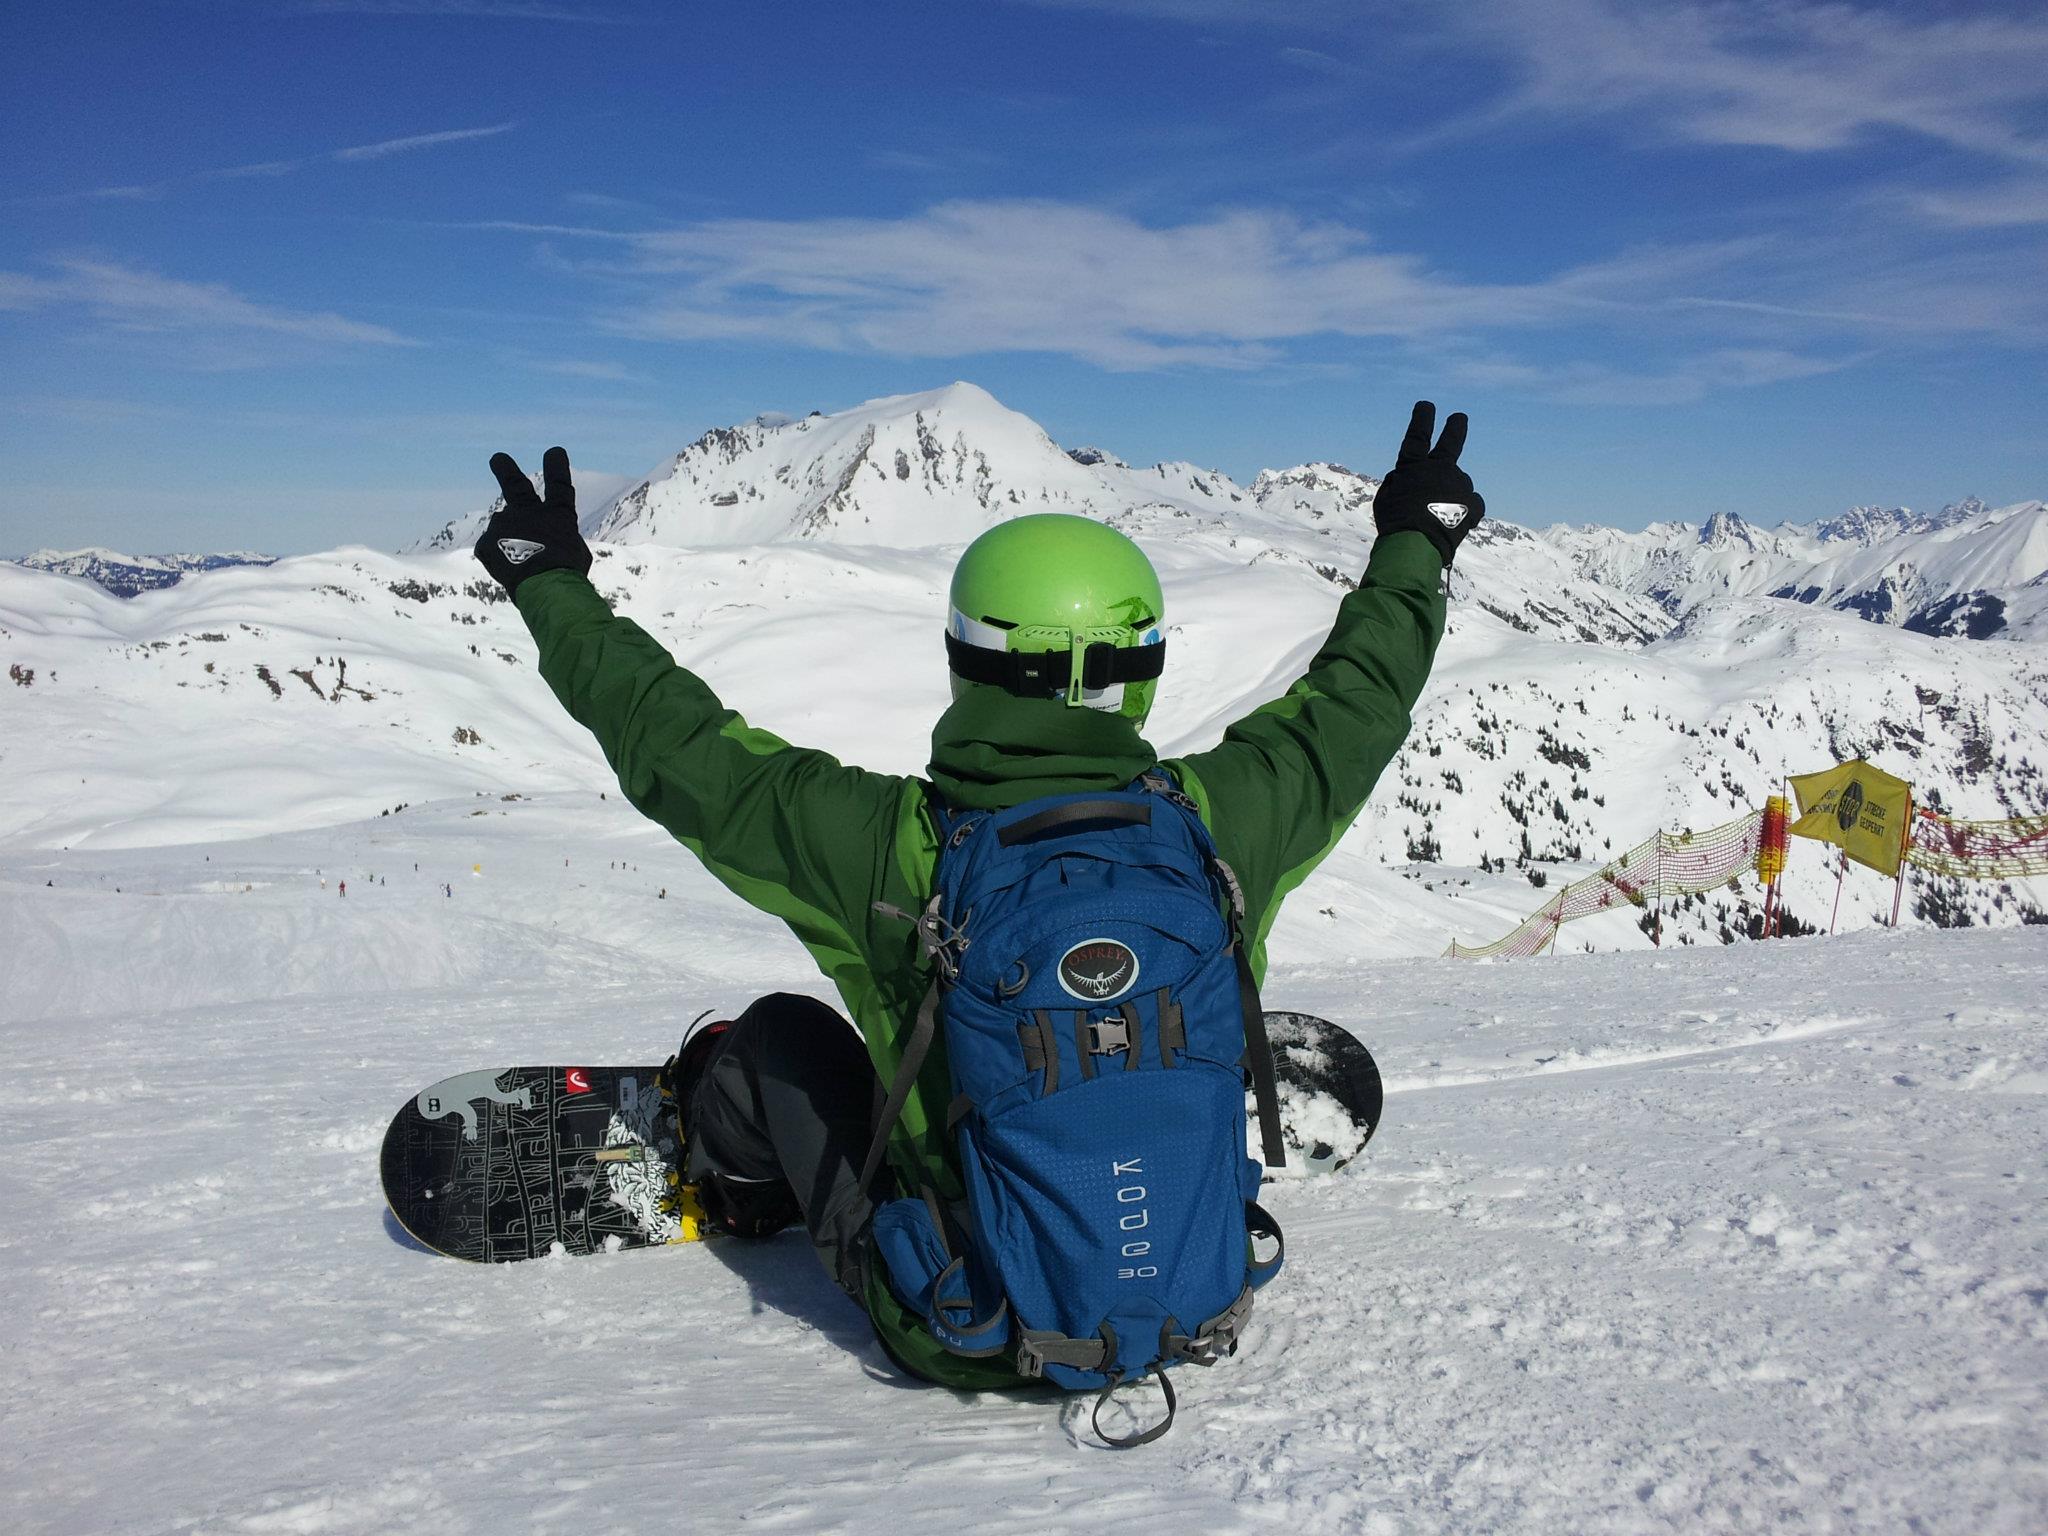 Testbericht – Head Snowboards: Komplette Snowboard-Ausrüstung der Winter-Kollektion 2012/2013 im Test